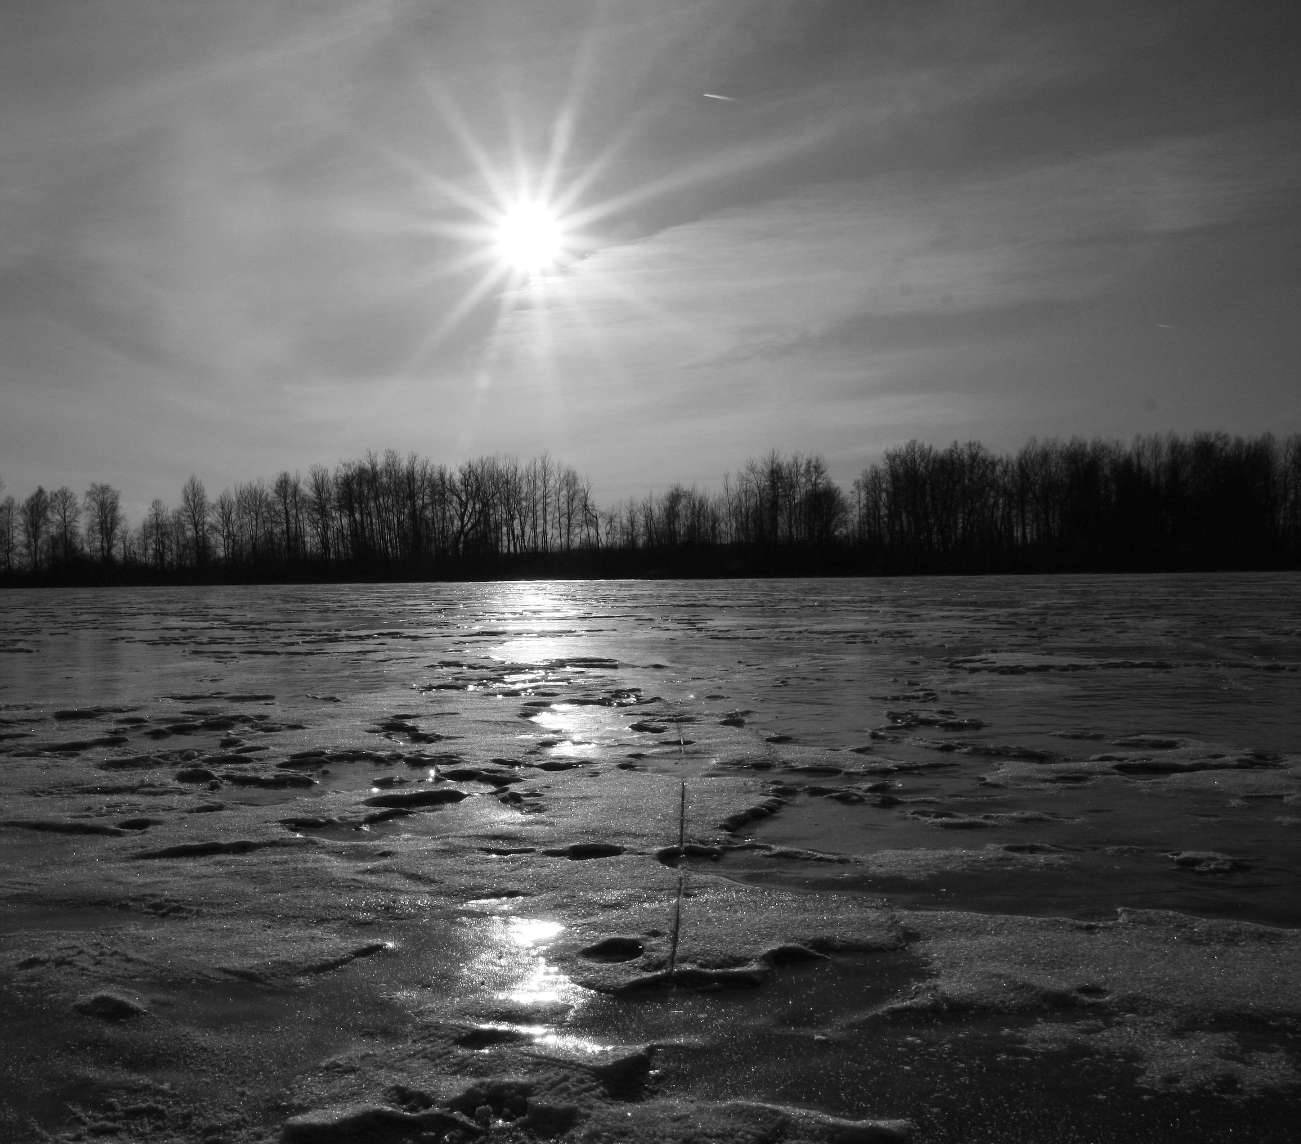 Zamrzlá hladina rybníku